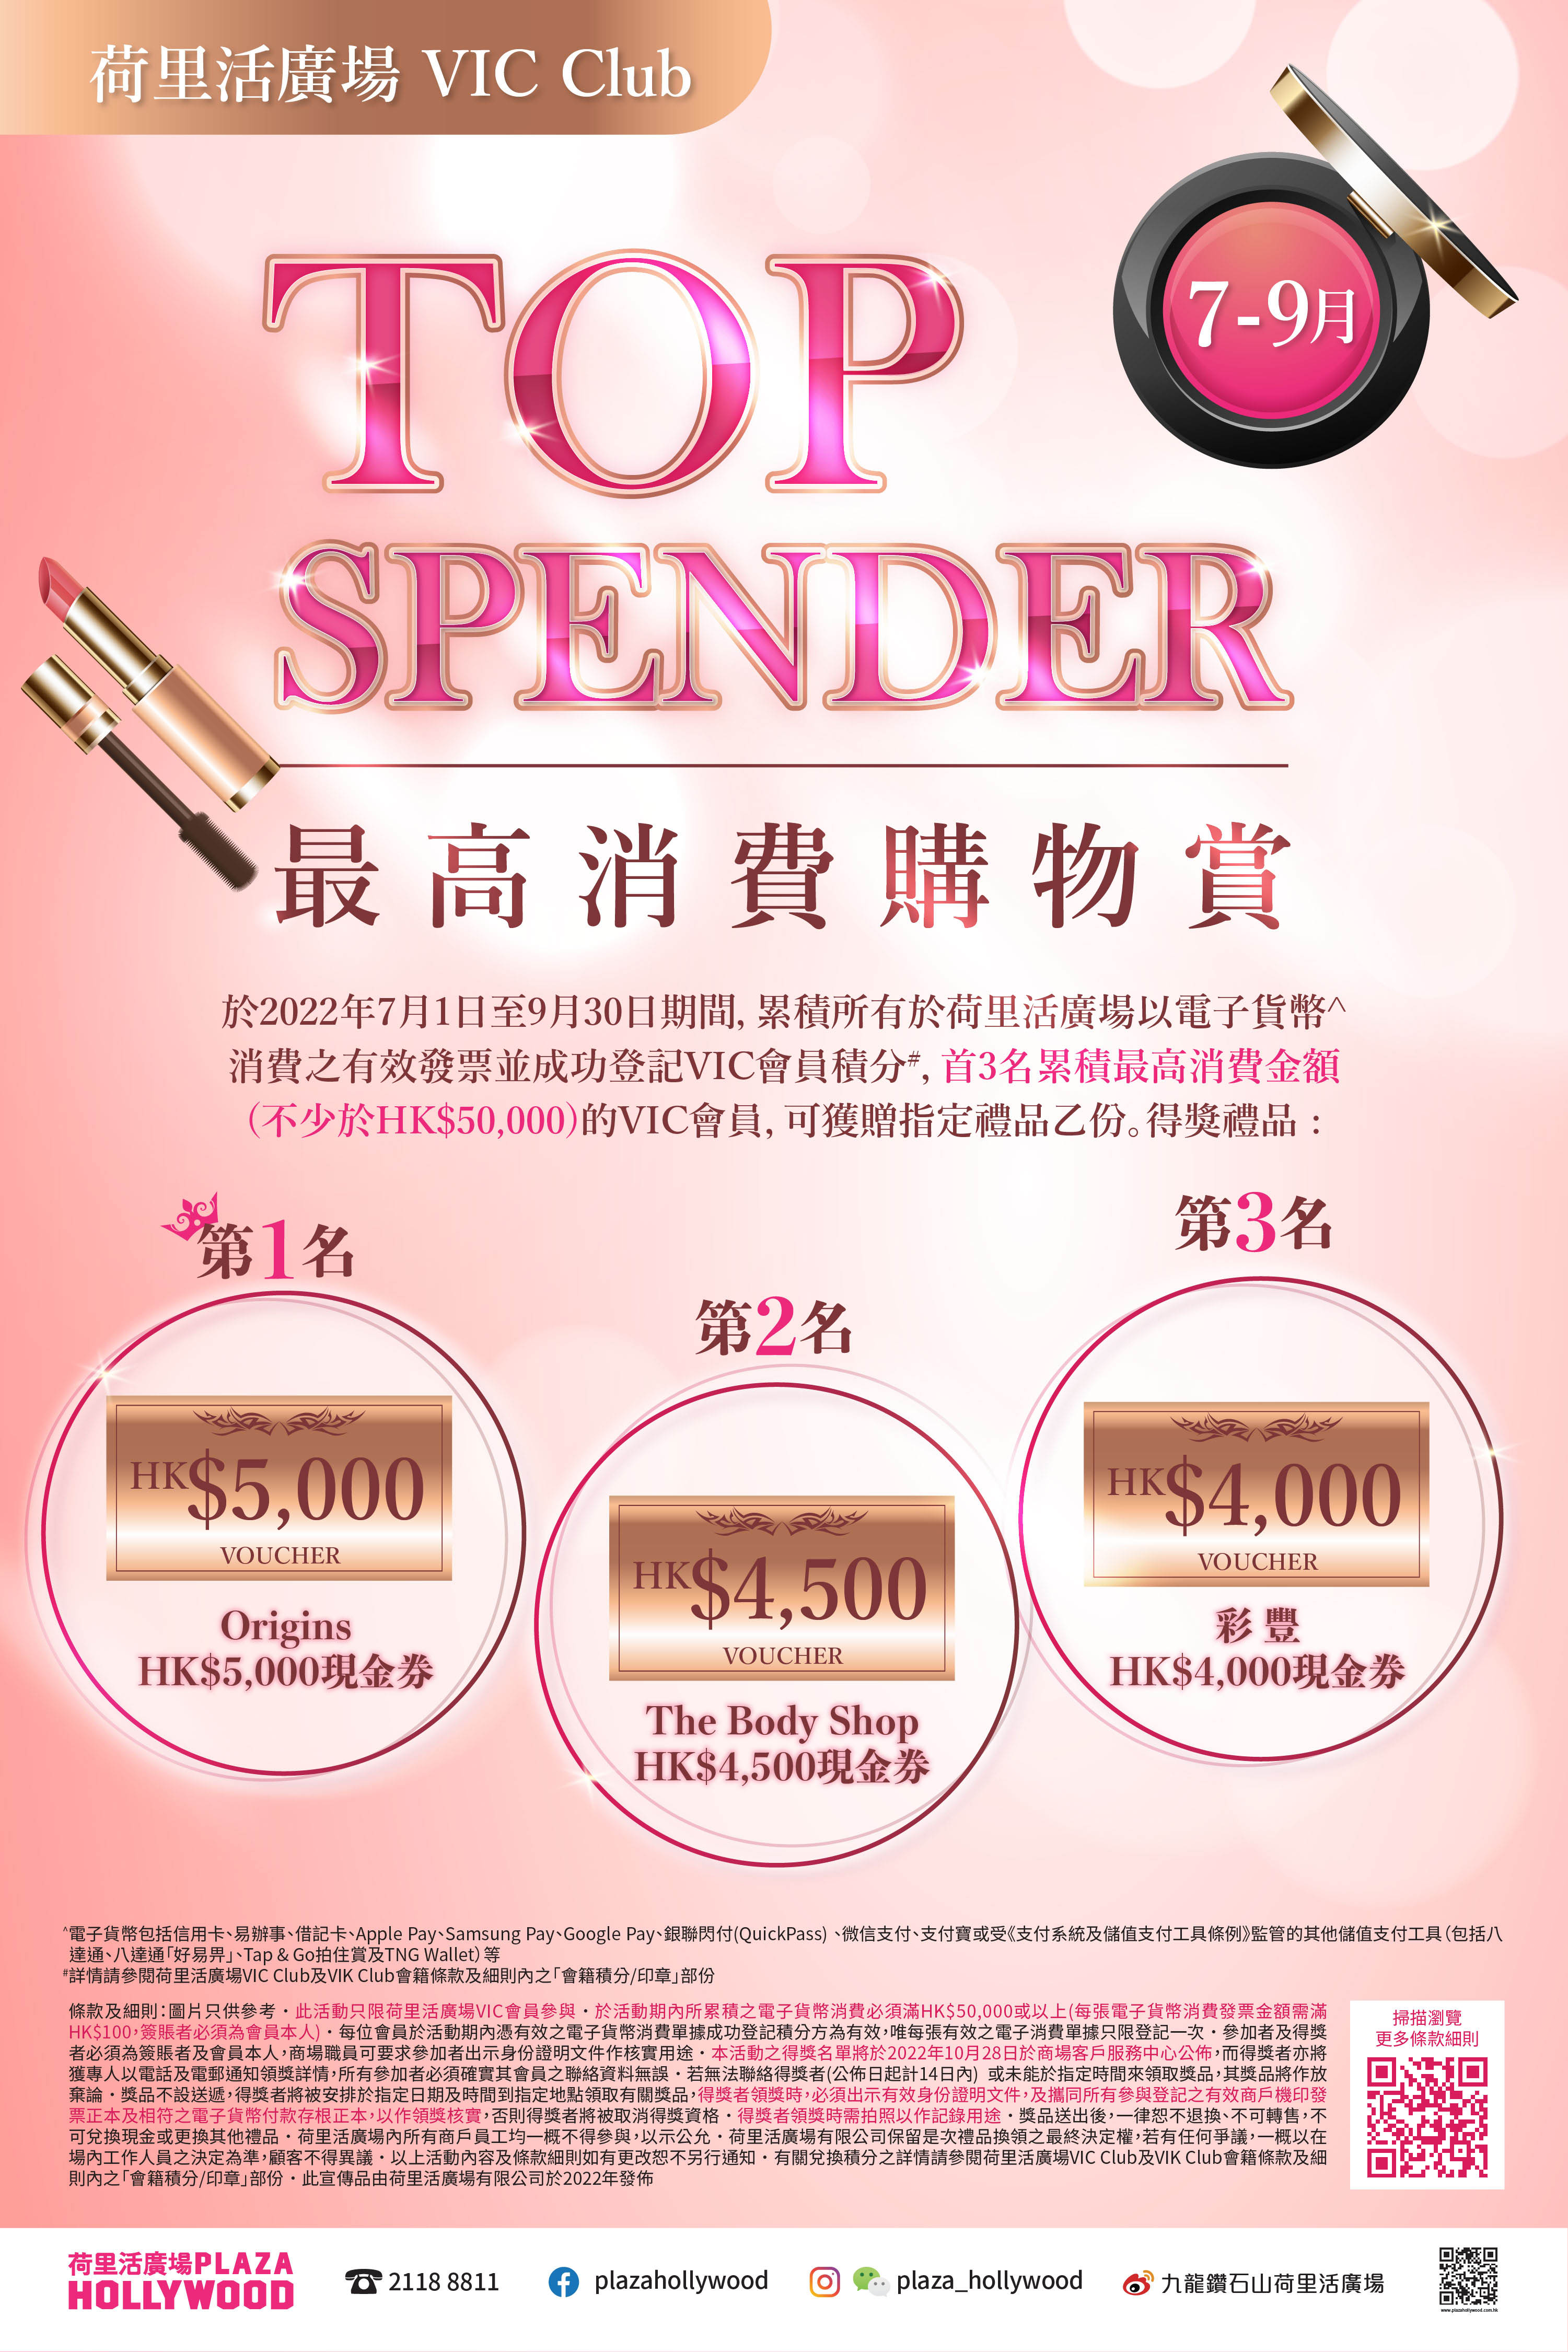 VIC Highest Spending Program (Jul-Sep)